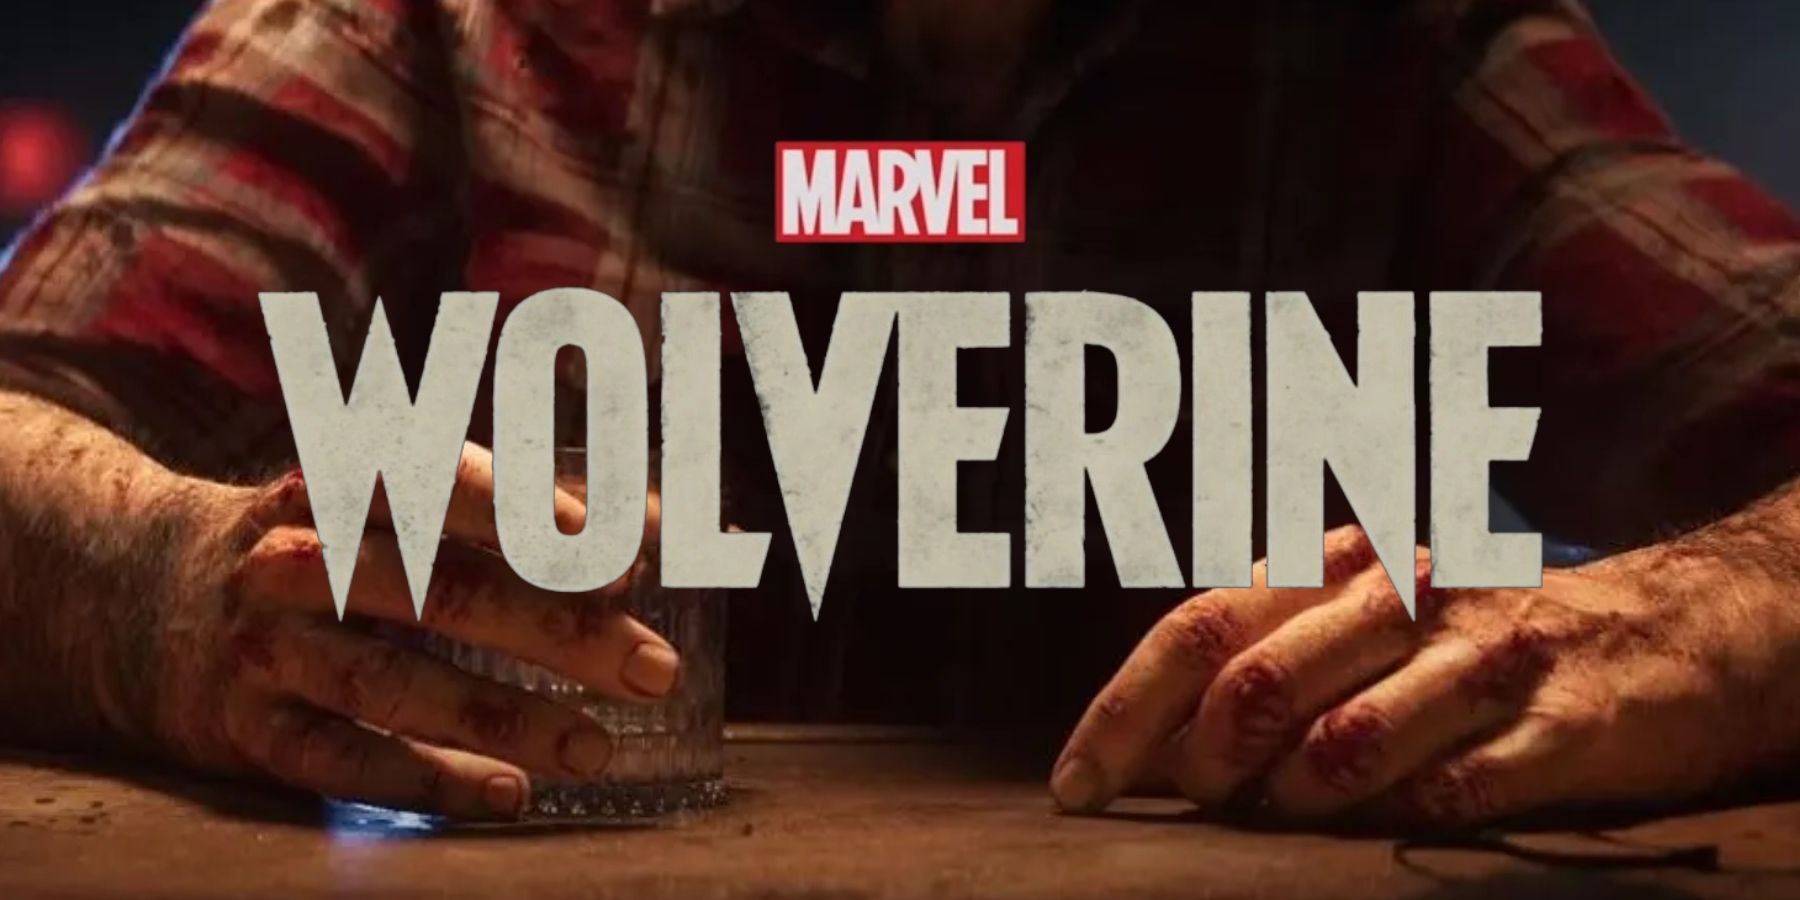 marvels-wolverine-logo-hands-bar